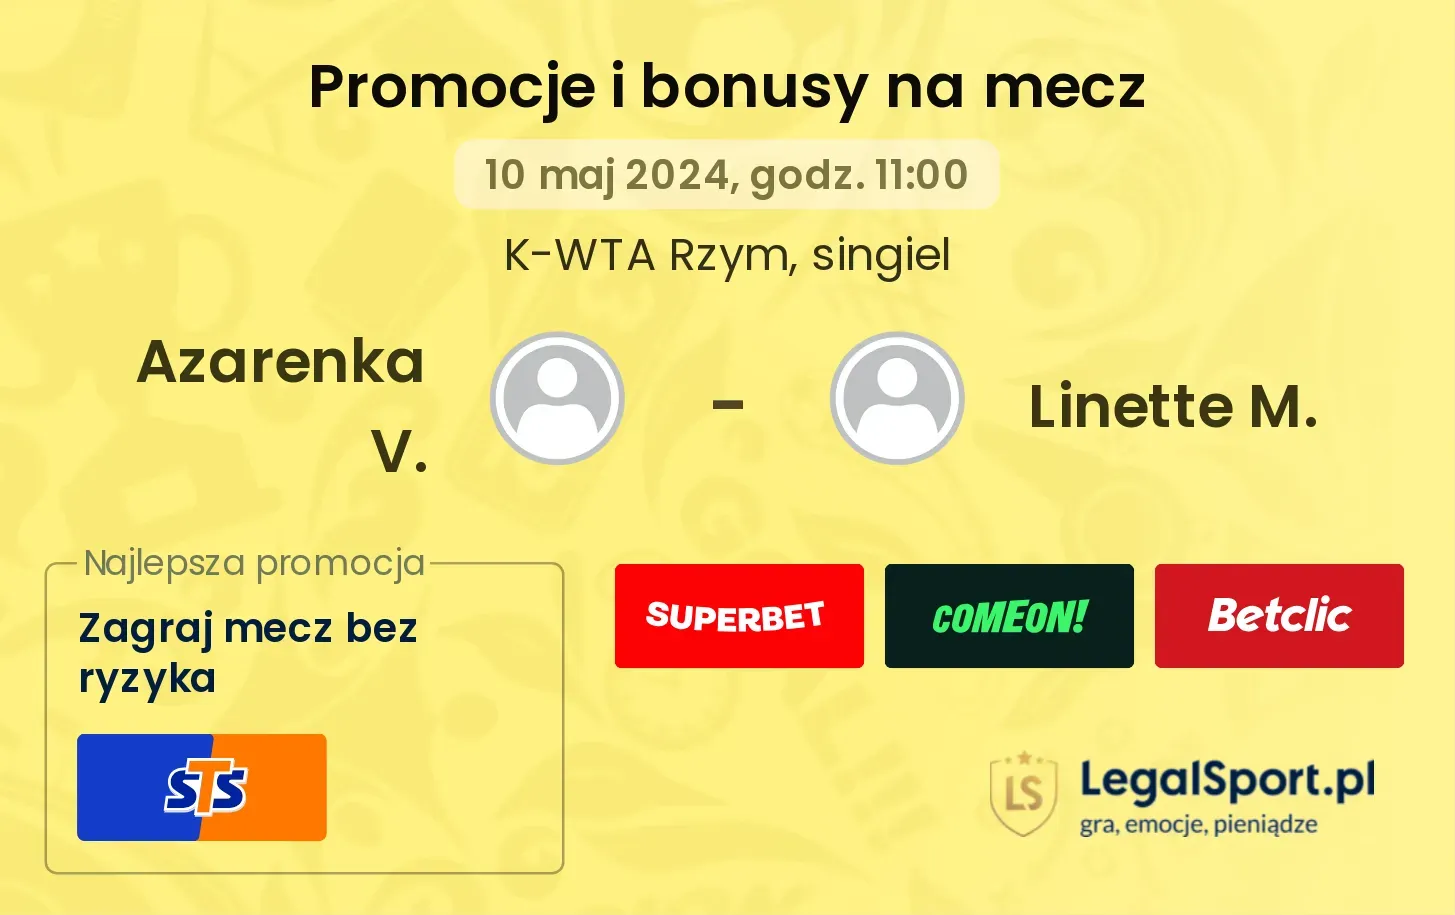 Azarenka V. - Linette M. promocje bonusy na mecz